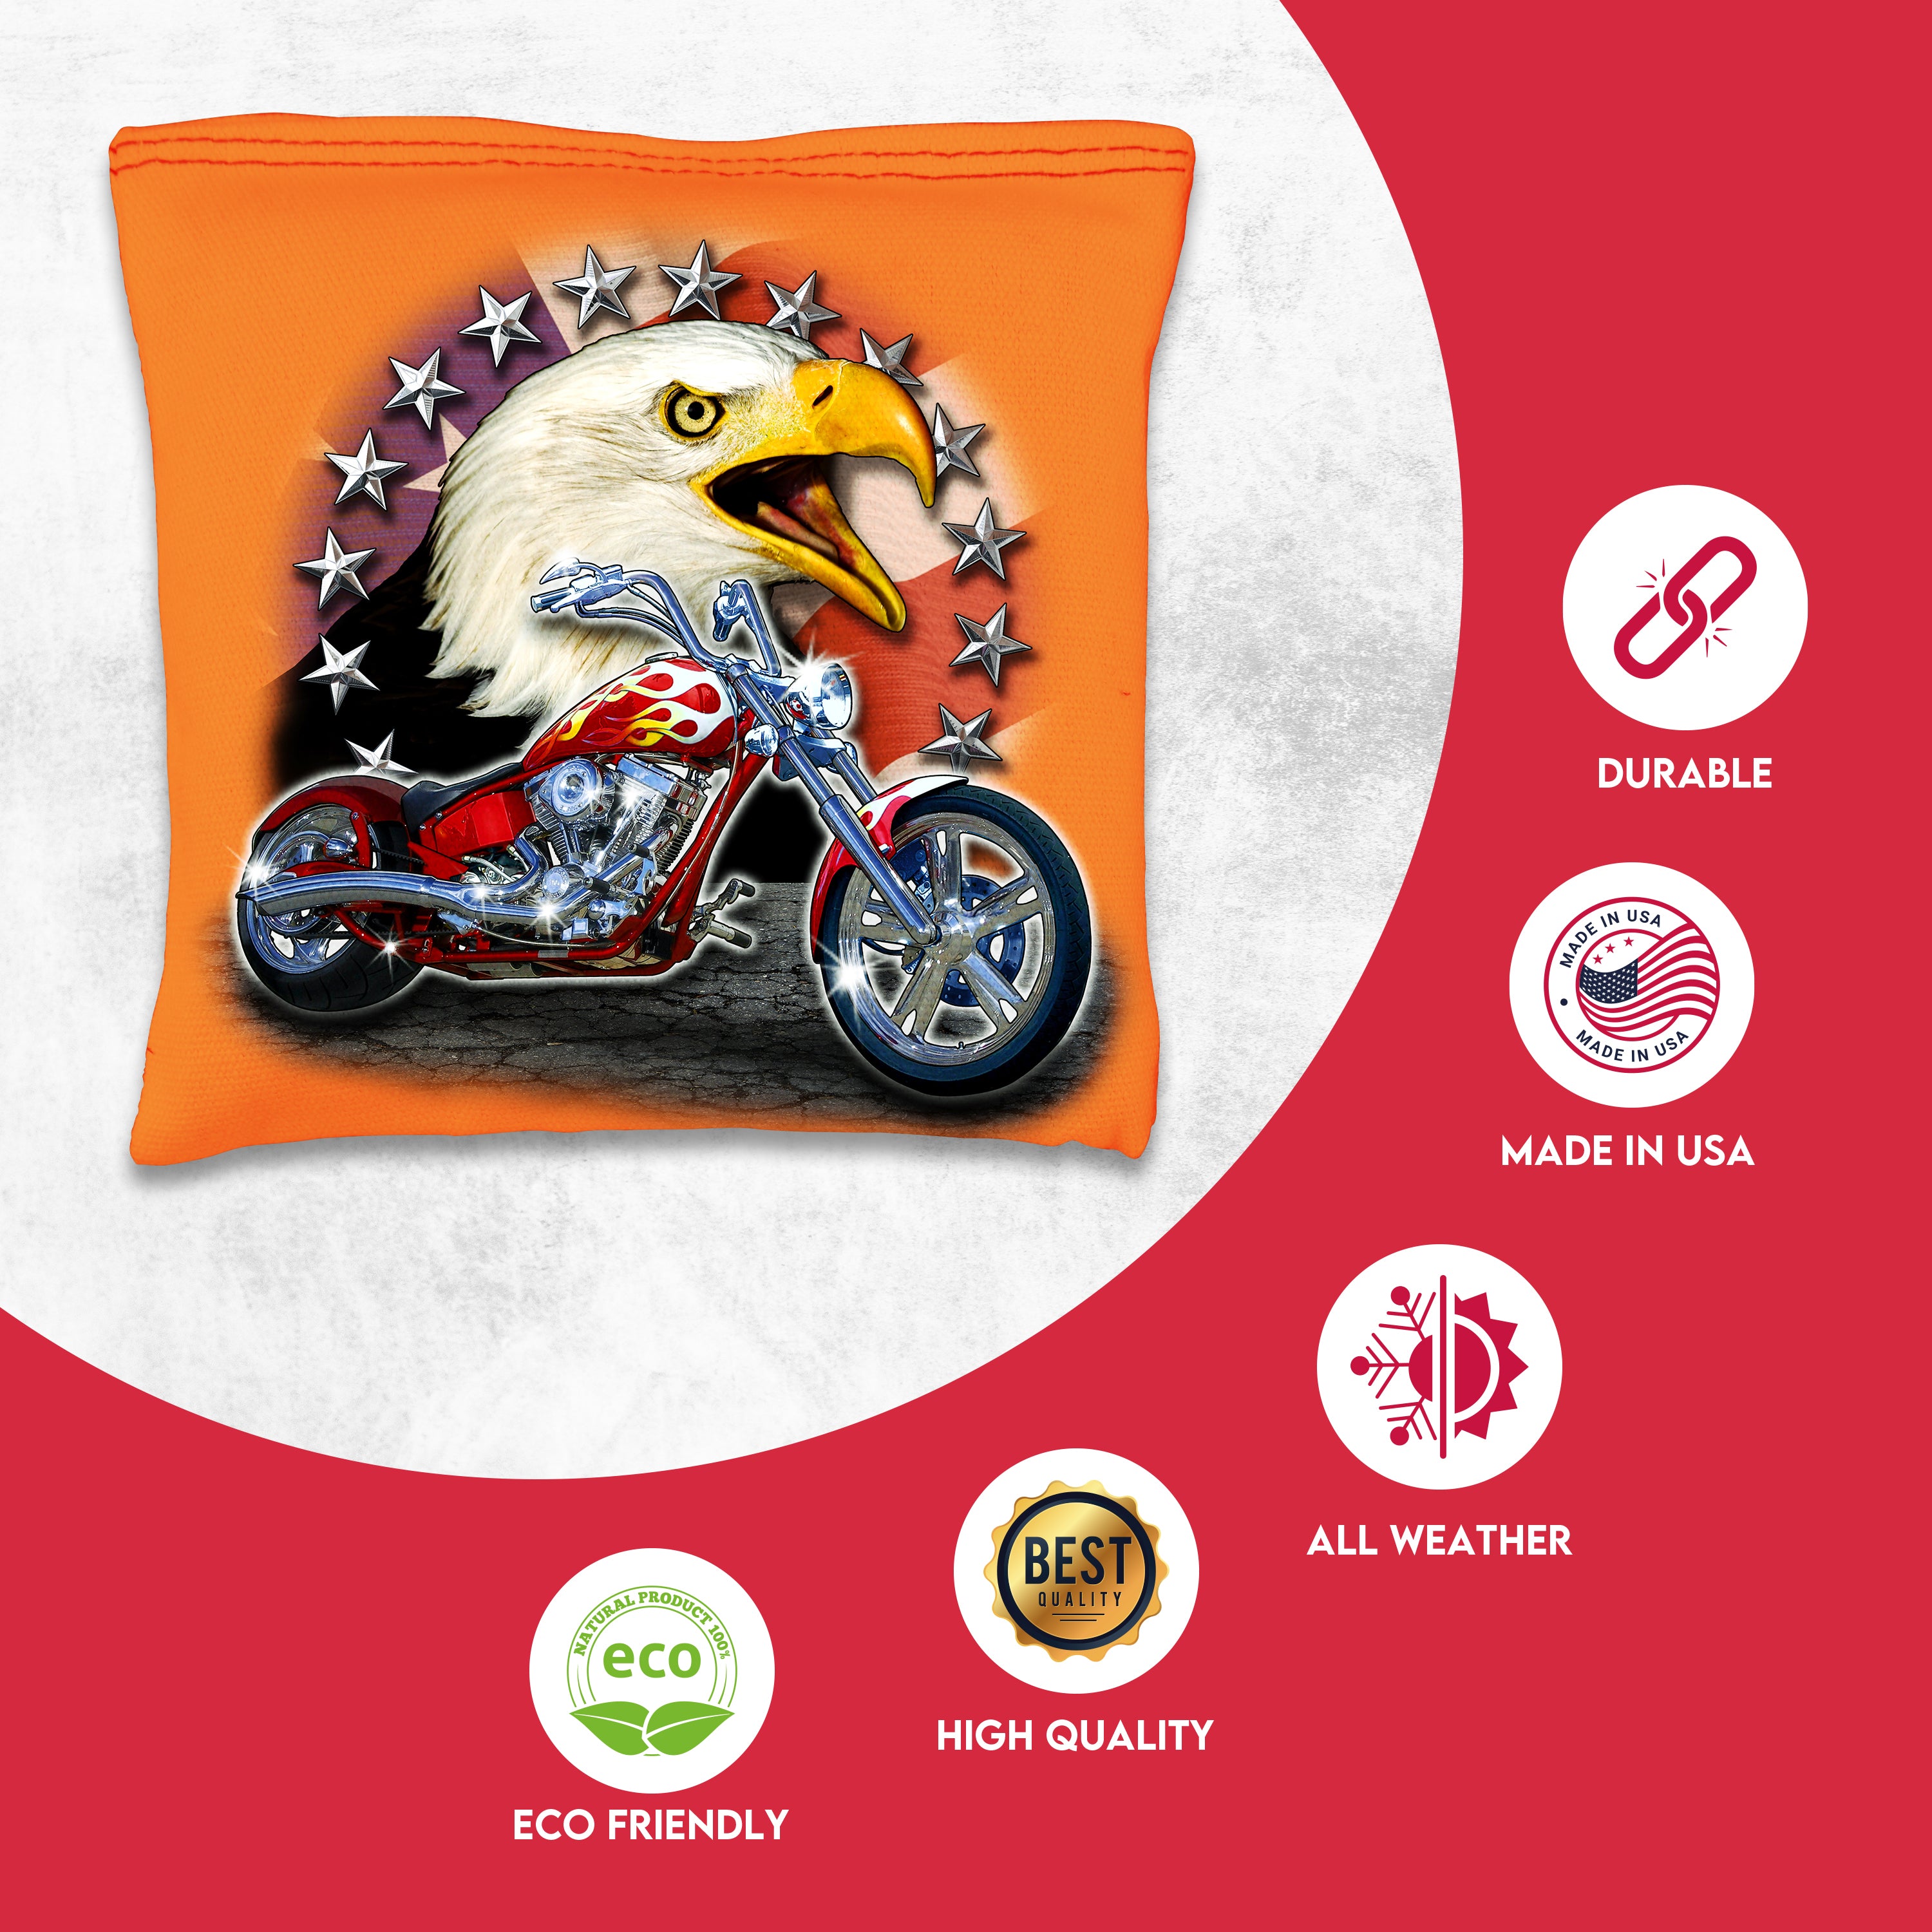 Motorcycle Bald Eagle Cornhole Bags